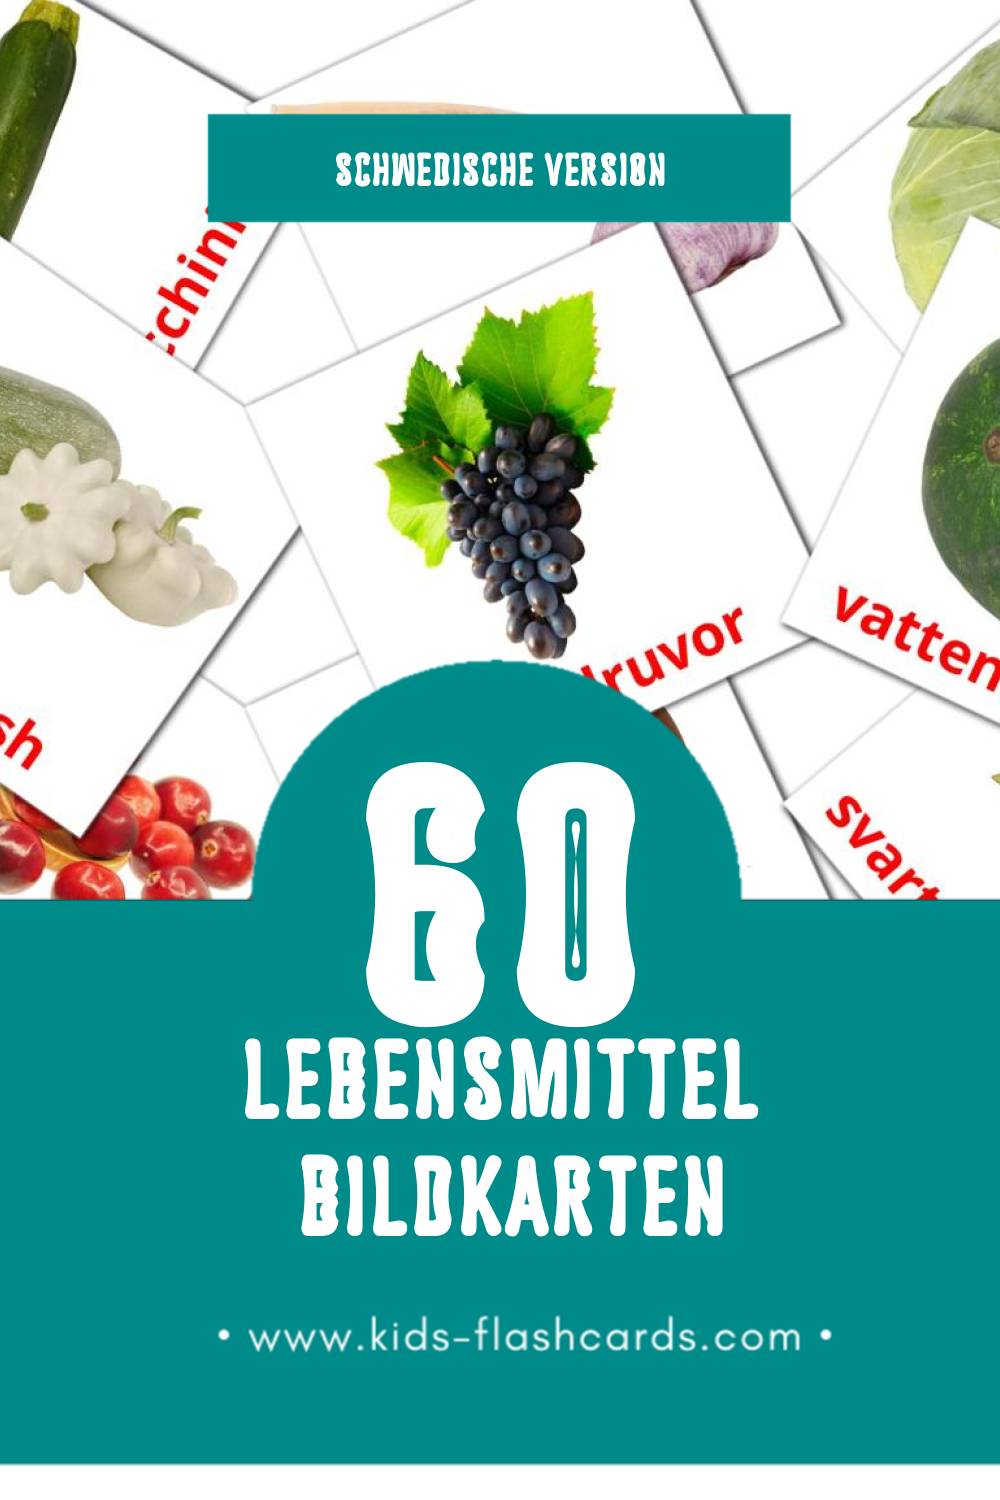 Visual Mat Flashcards für Kleinkinder (60 Karten in Schwedisch)